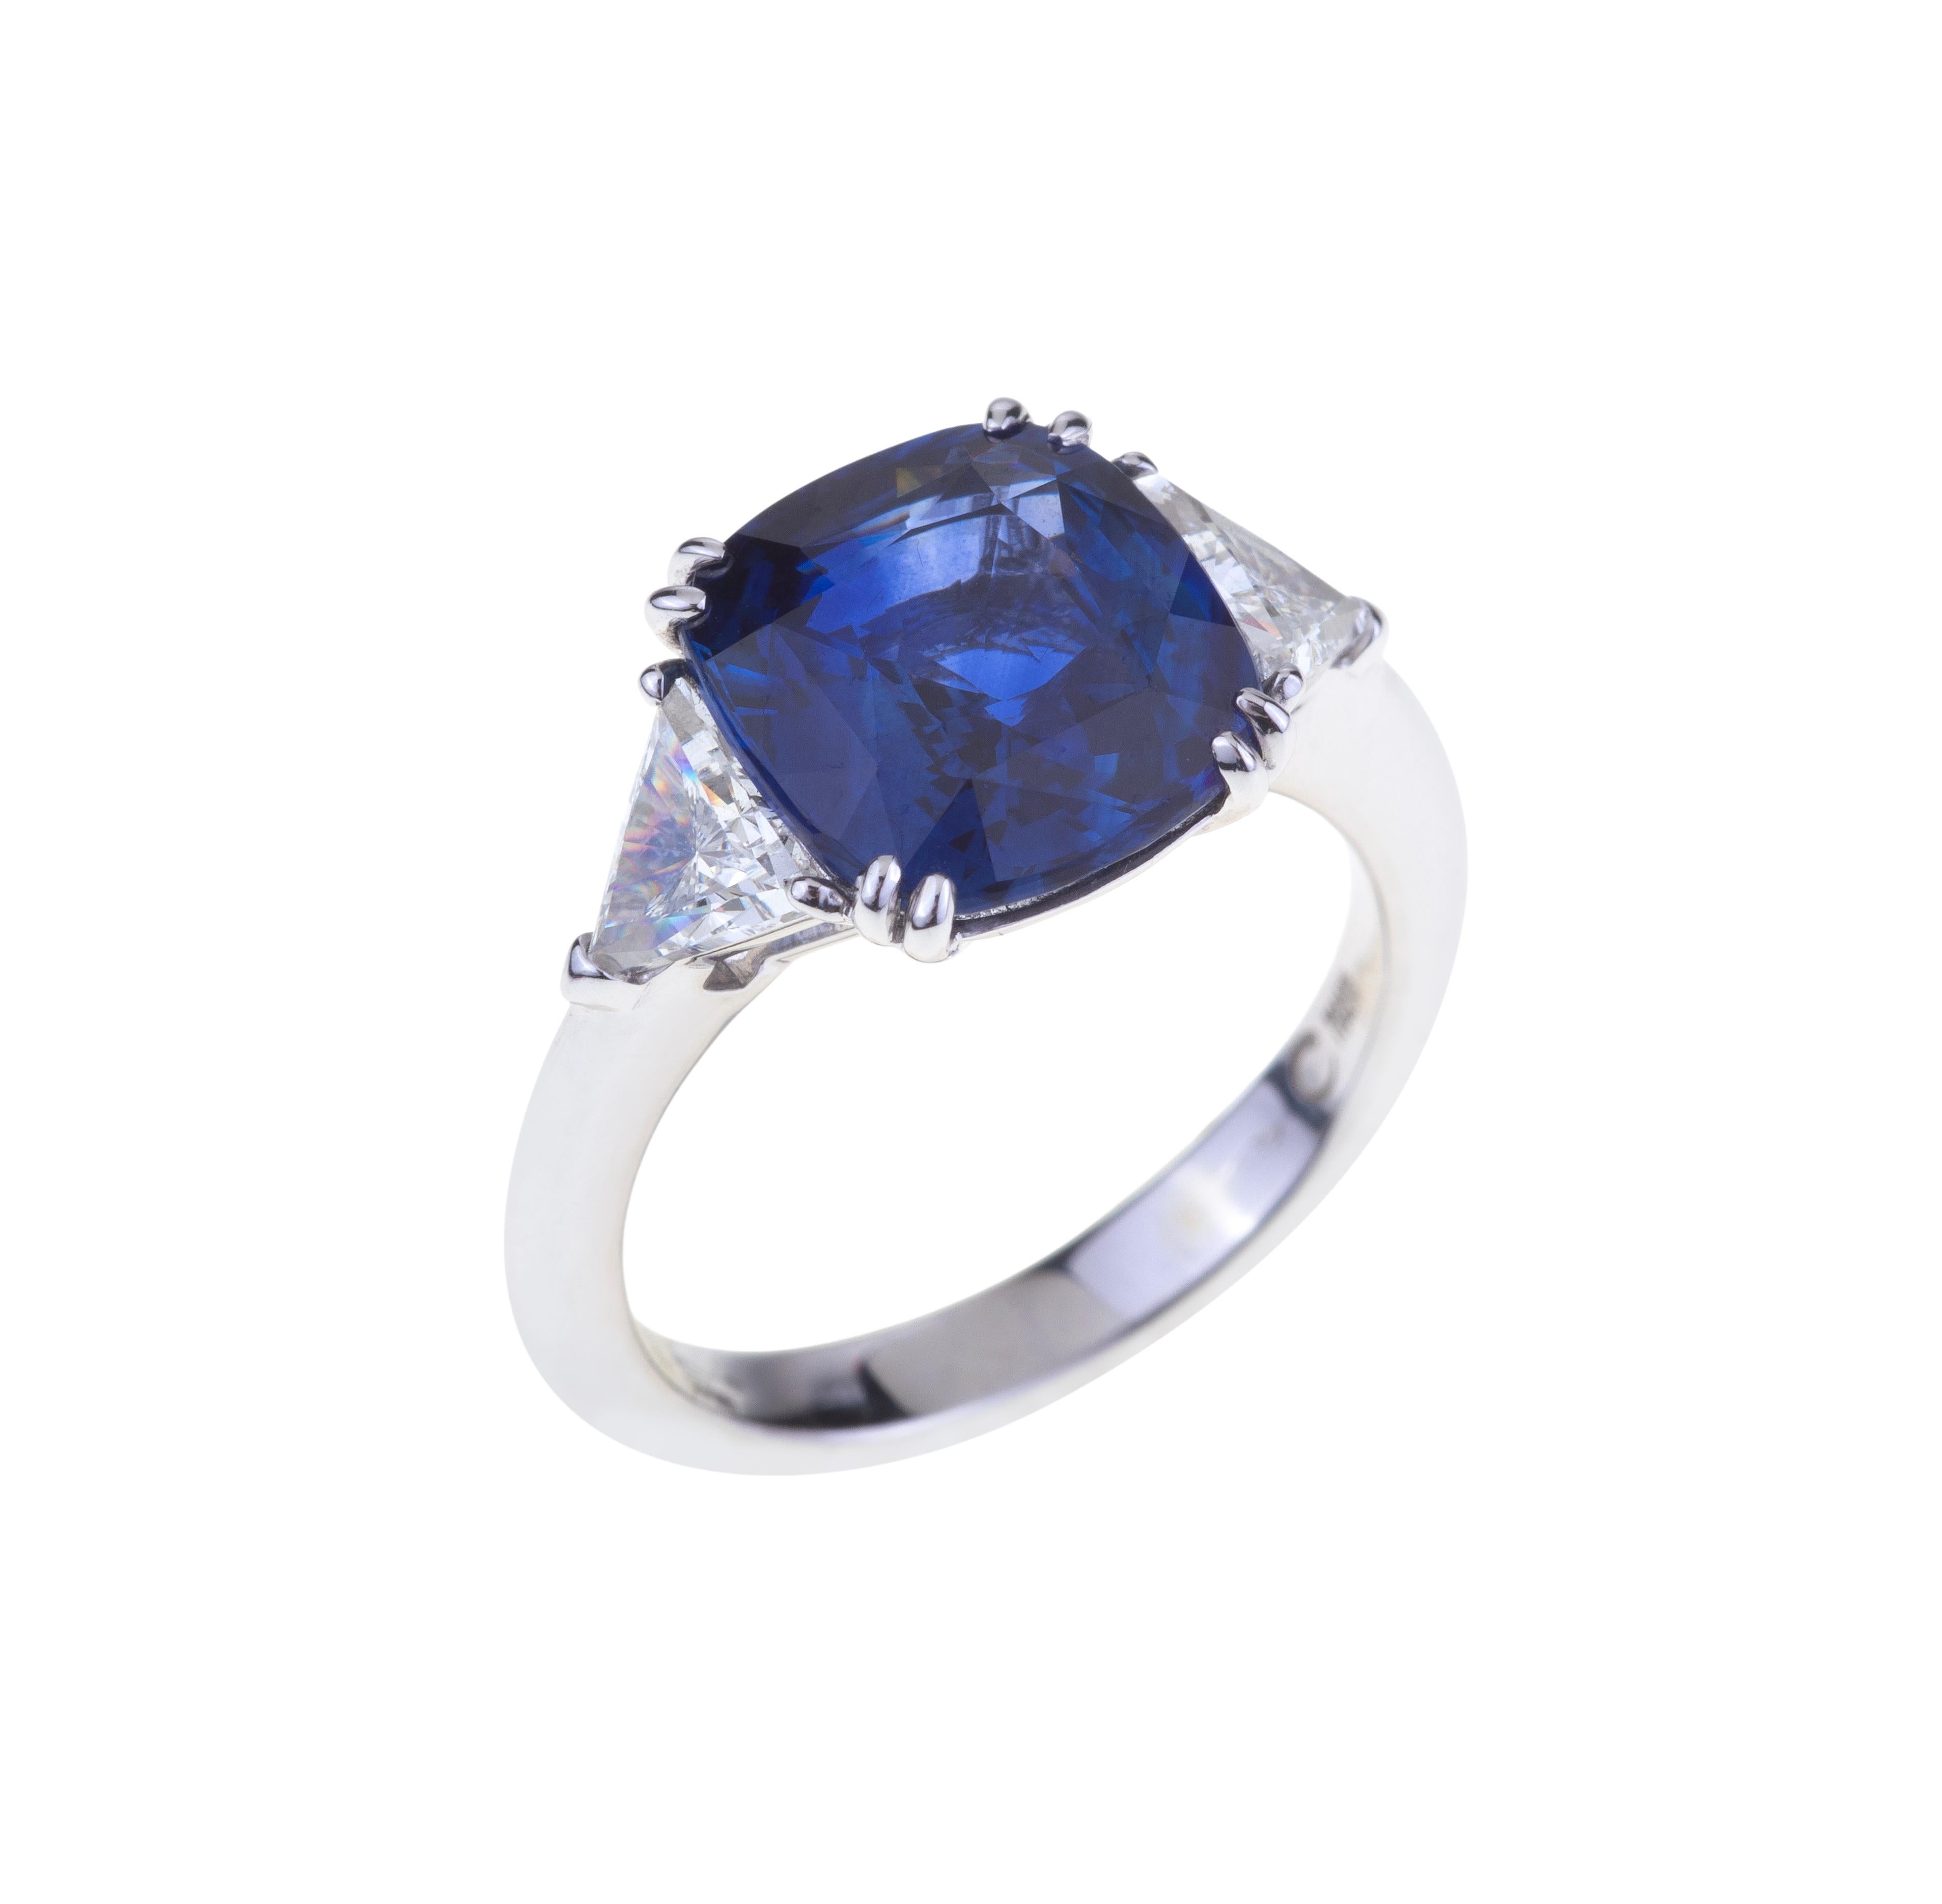 Superbe bague ovale en saphirs bleus ct. 5.35 Certificat avec diamants.
Design/One classique avec un saphir bleu (ct. 5.35 ) et des diamants sur le côté (ct. 0.83  F-SI). Le poids de l'or 18kt est de 4,50.
Conçu en Italie.
Angeletti, c'est une